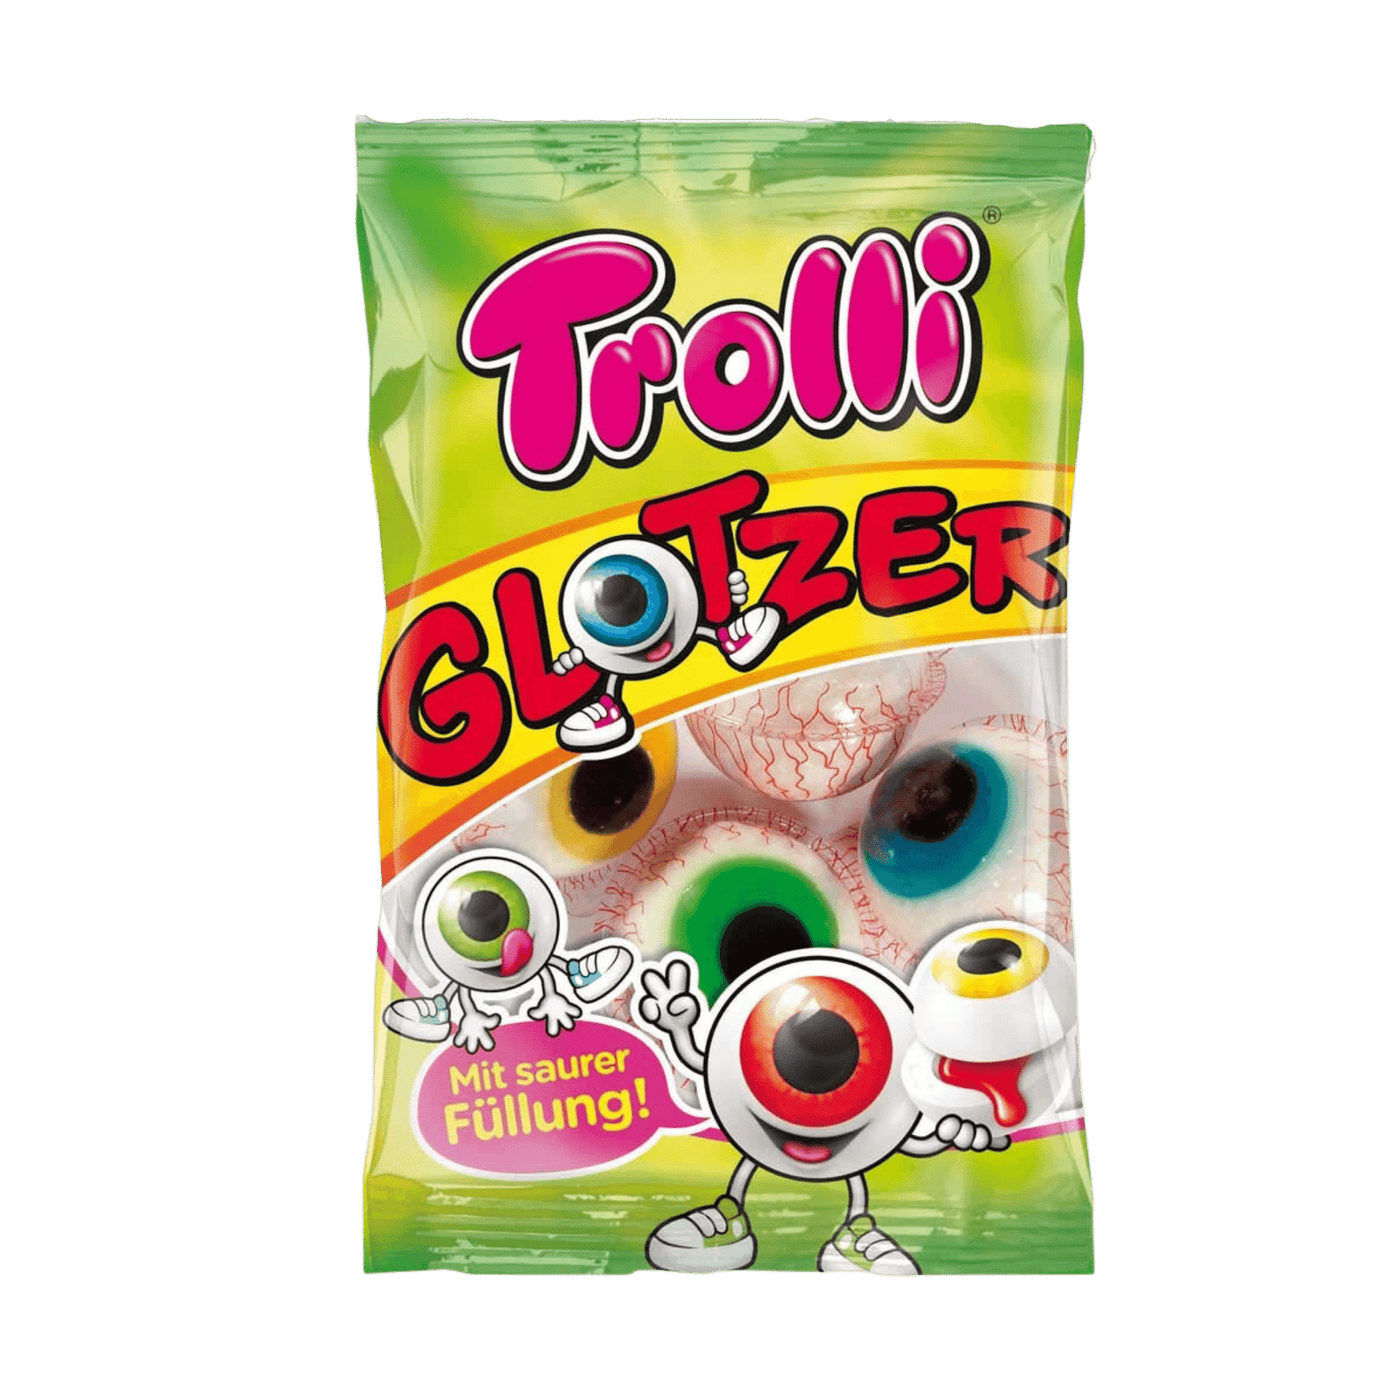 Trolli - Glotzer - Germany